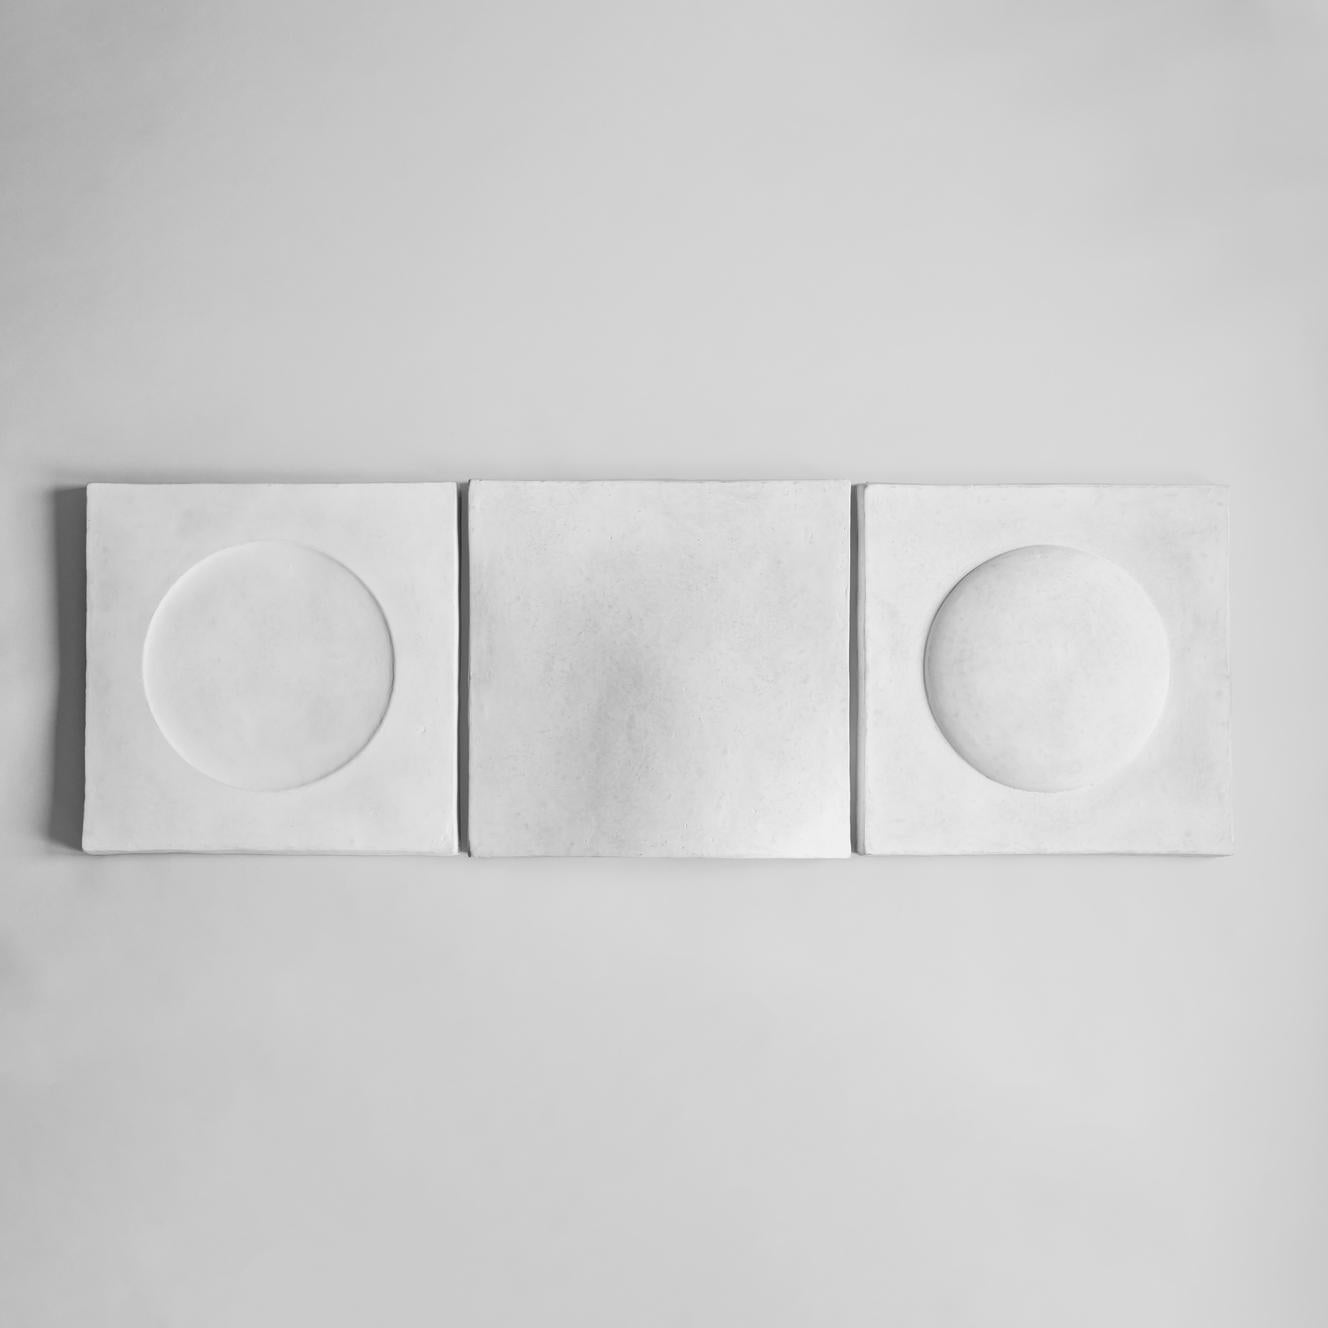 Weiße Sculpt Art Bubble von 101 Copenhagen
Entworfen von Kristian Sofus Hansen & Tommy Hyldahl
Abmessungen: L58 / B12,5 / H58 CM
MATERIALIEN: Nachhaltige Papiermasse

Sculp Wall Art stellt die Idee traditioneller Wandbilder in Frage, auf der